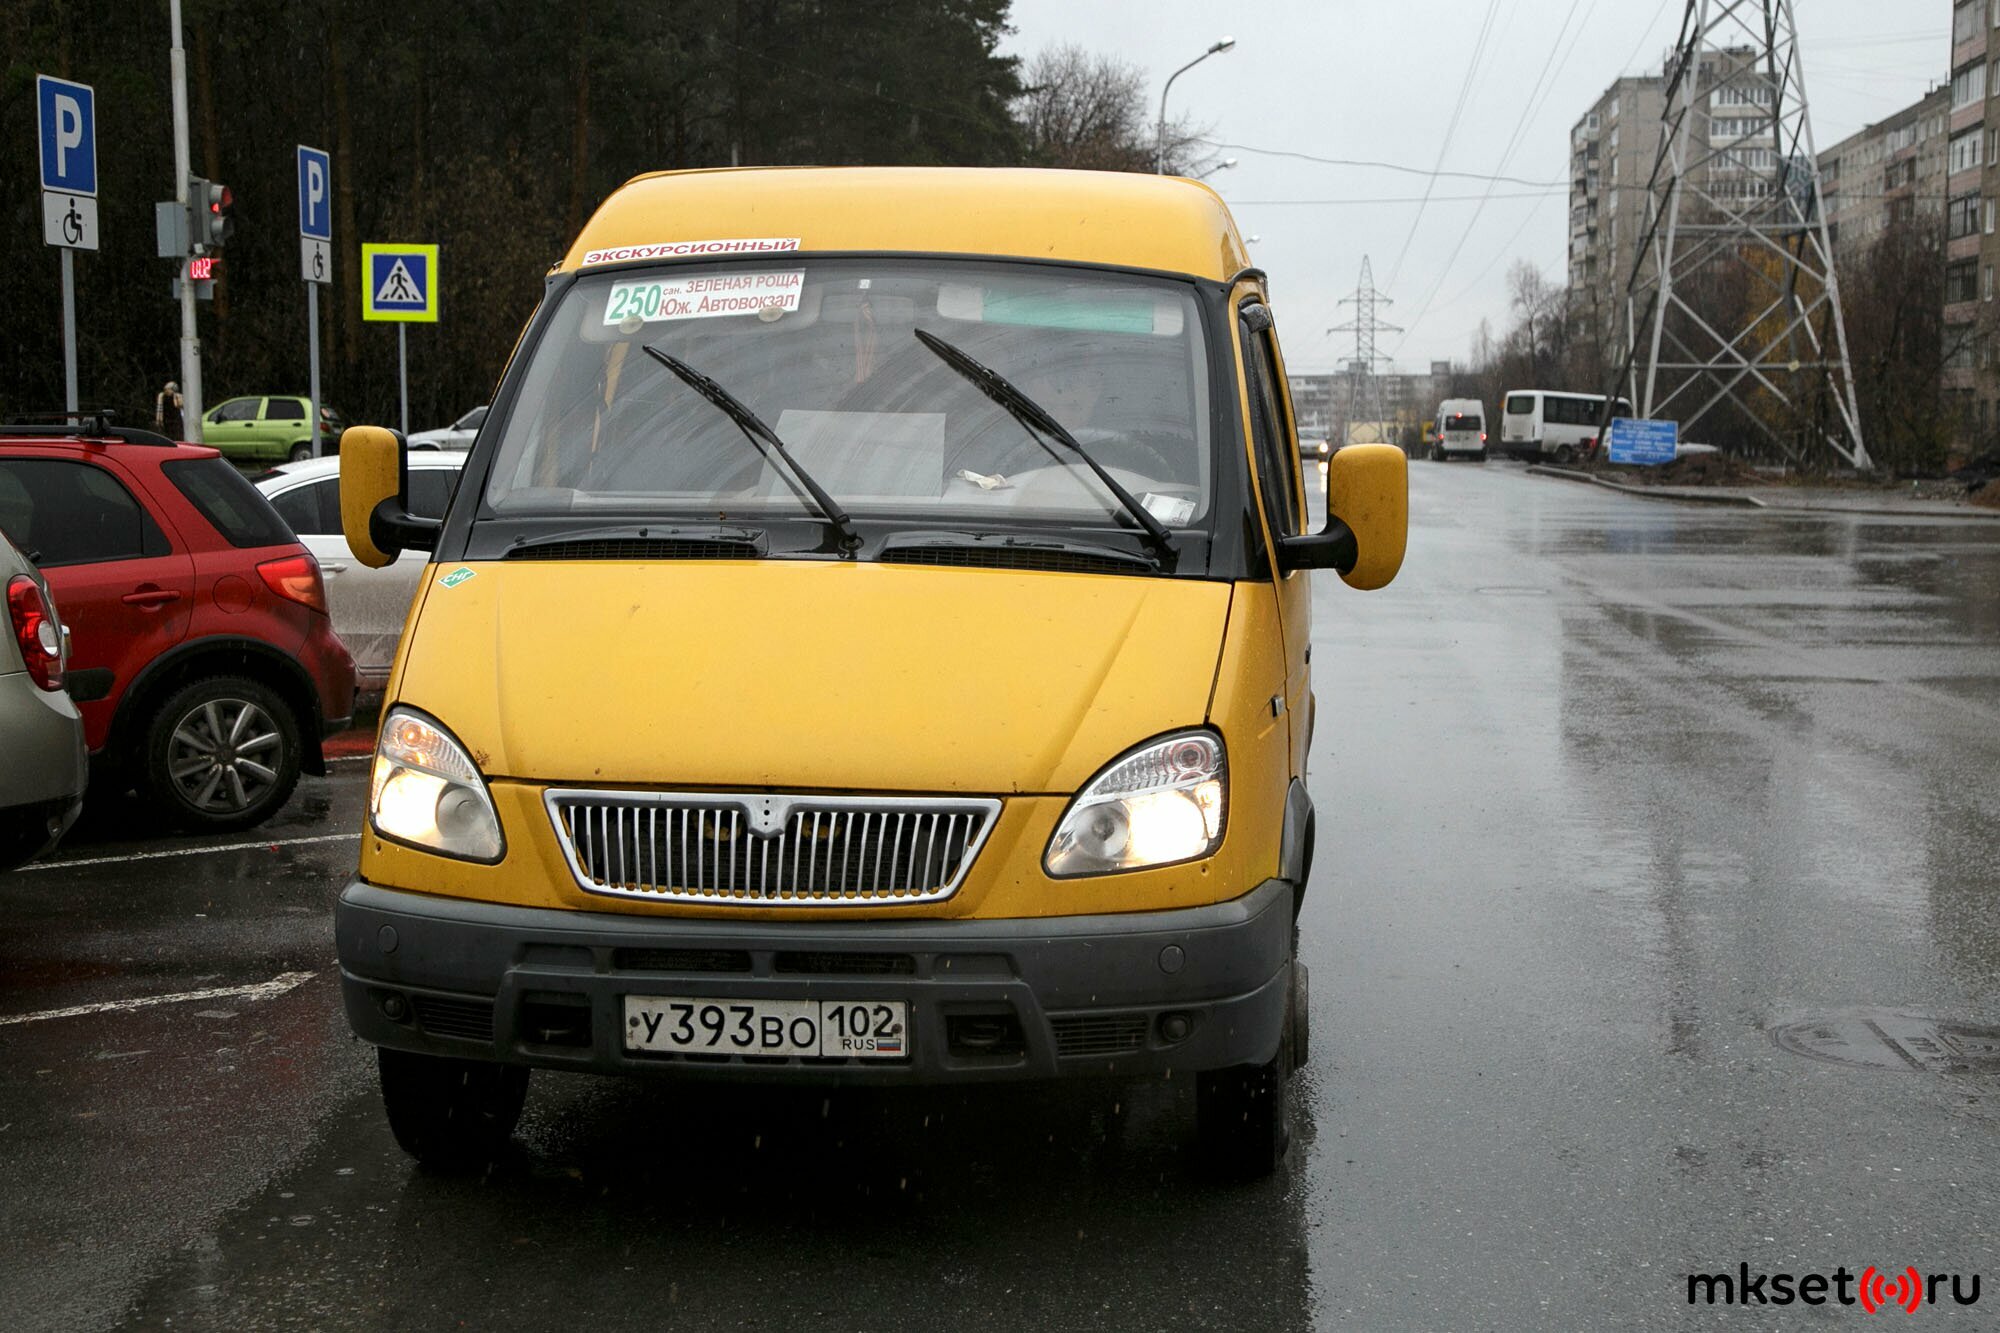 Наобещали: В Госкомтрансе заявили, что нелегальных перевозчиков в Башкирии больше нет